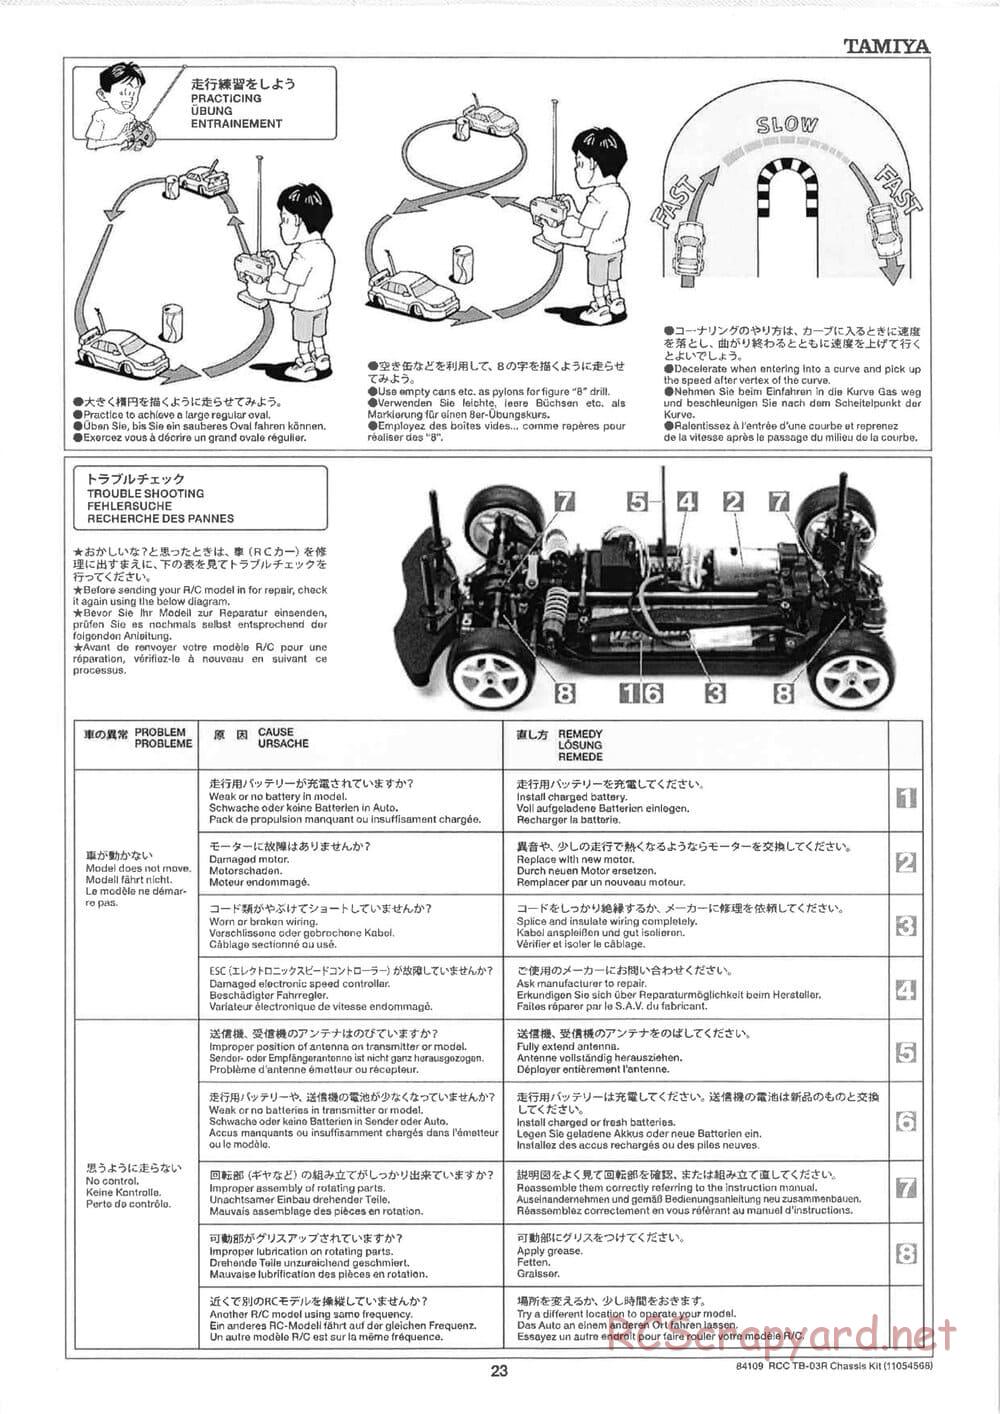 Tamiya - TB-03R Chassis - Manual - Page 23